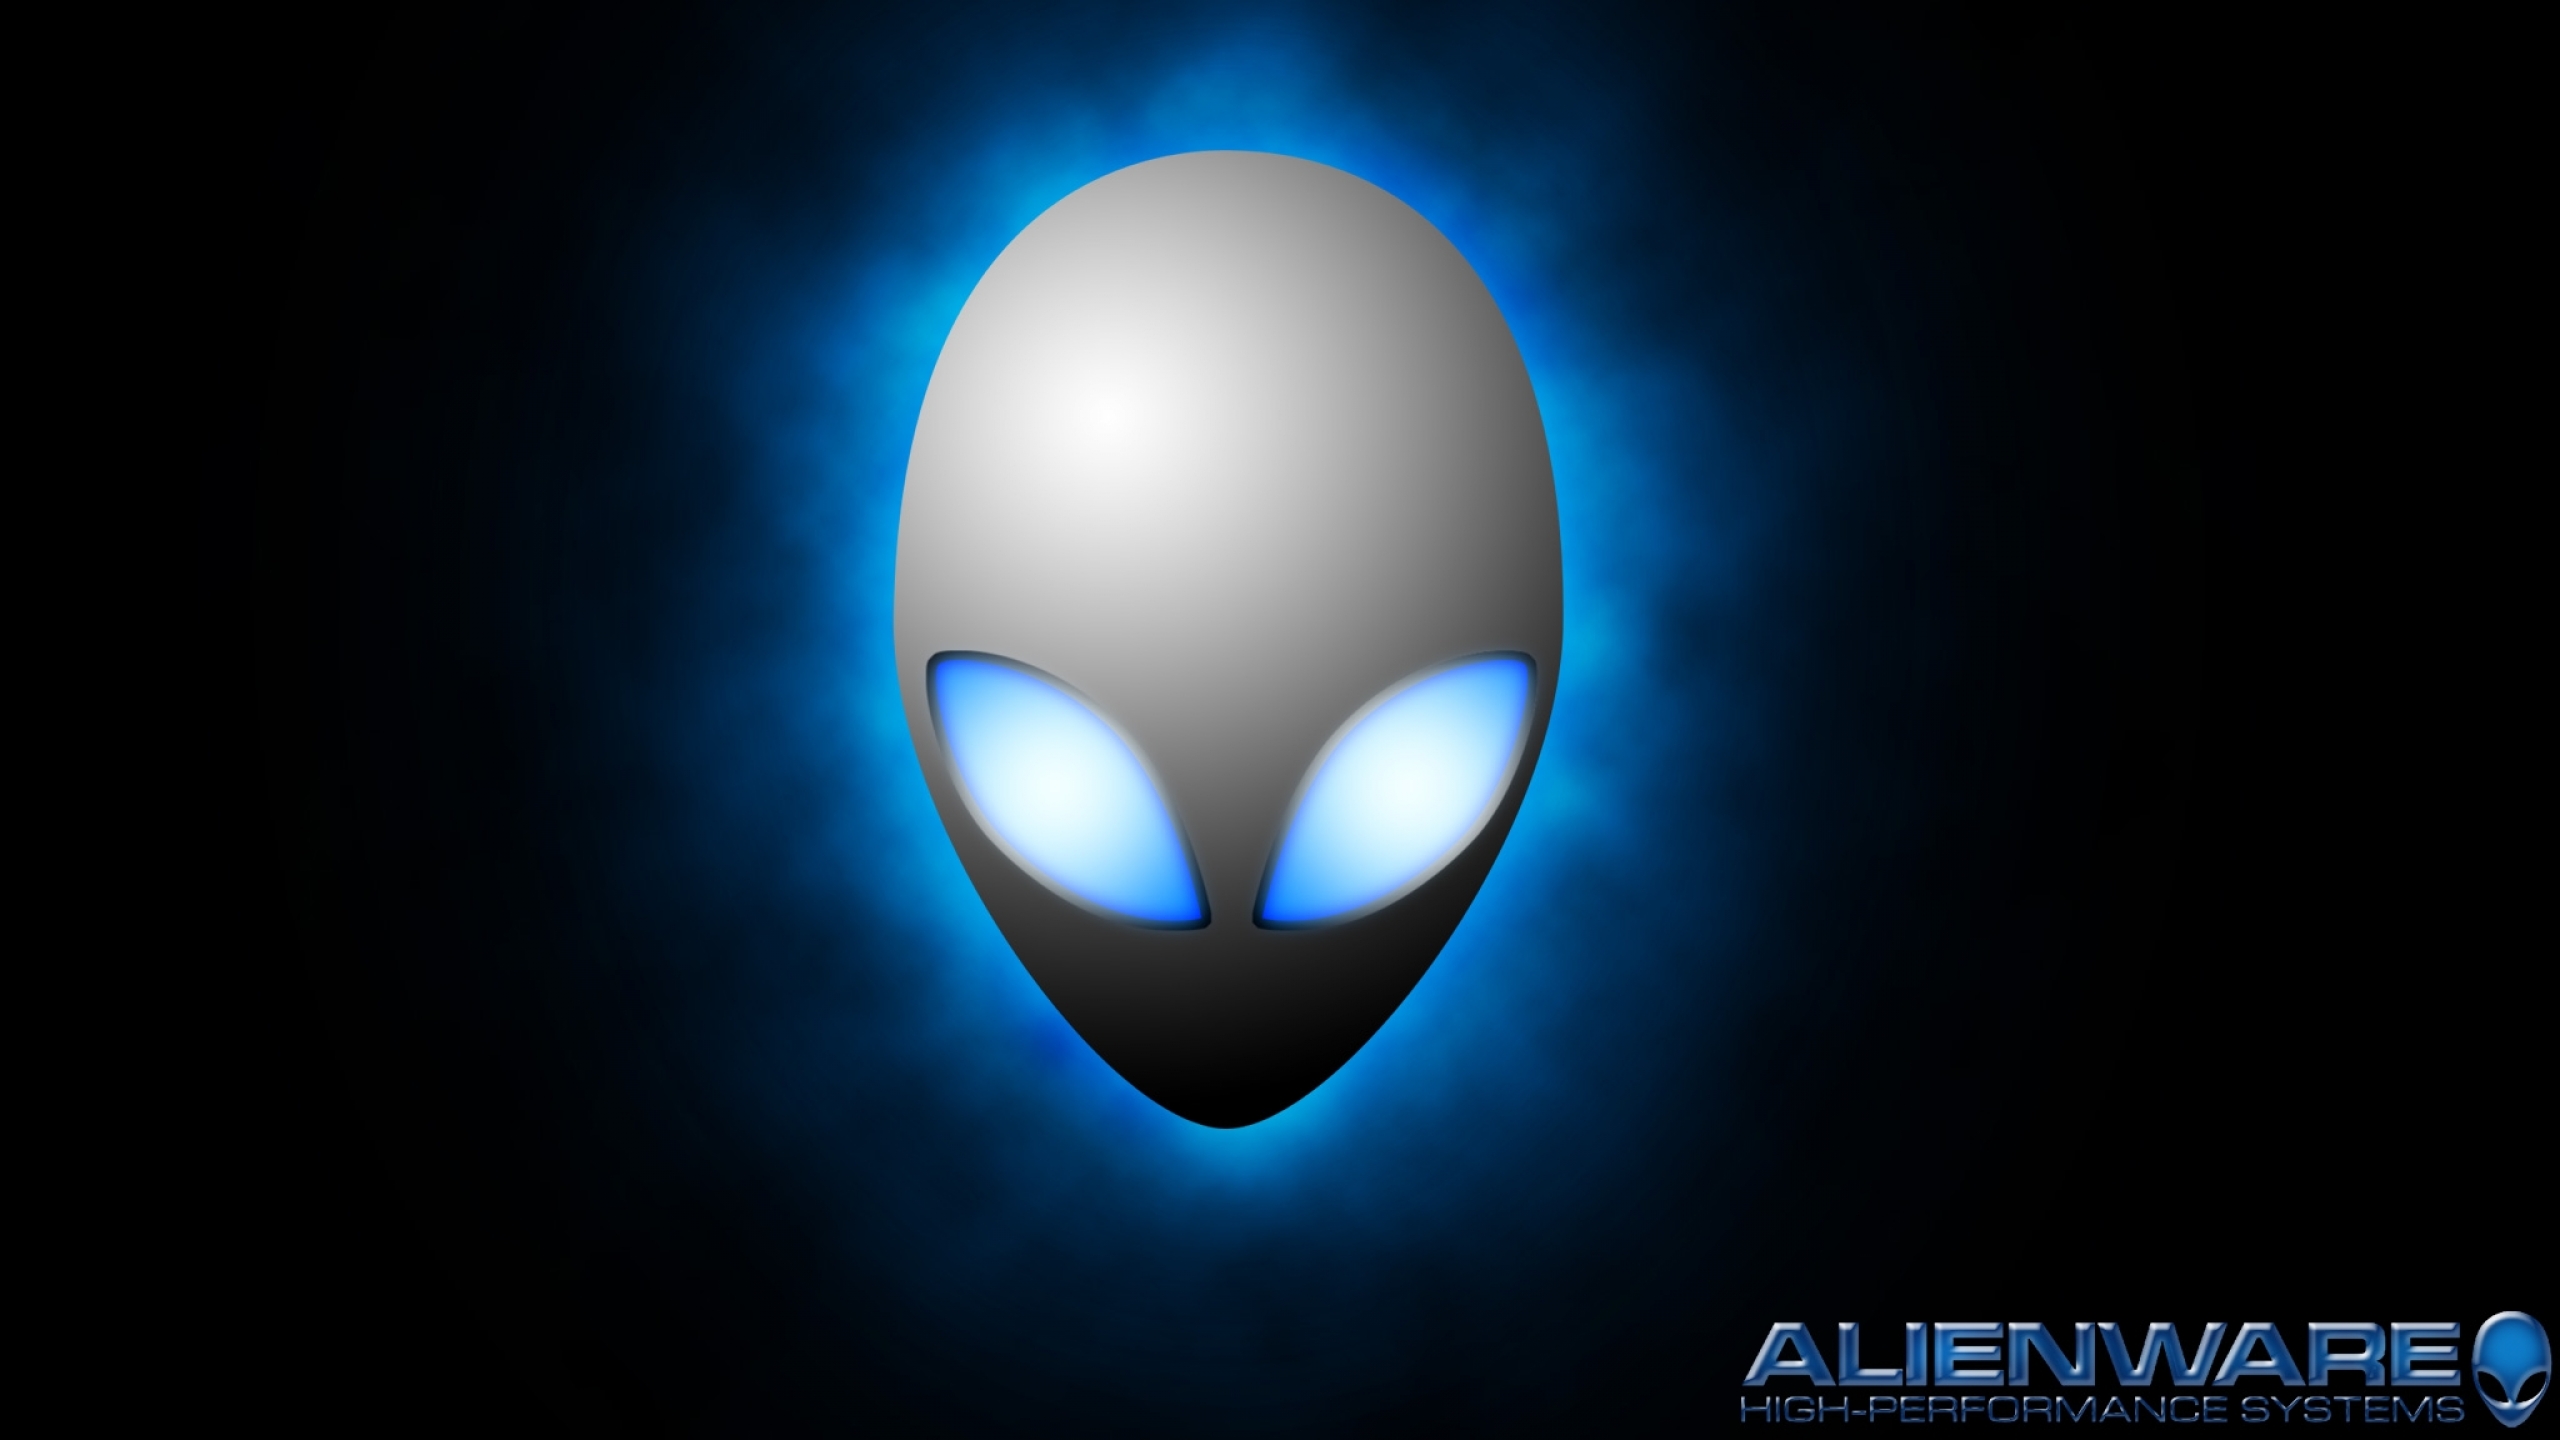  alienware advertisement aliens 2048x1152 wallpaper Wallpaper 2560x1440